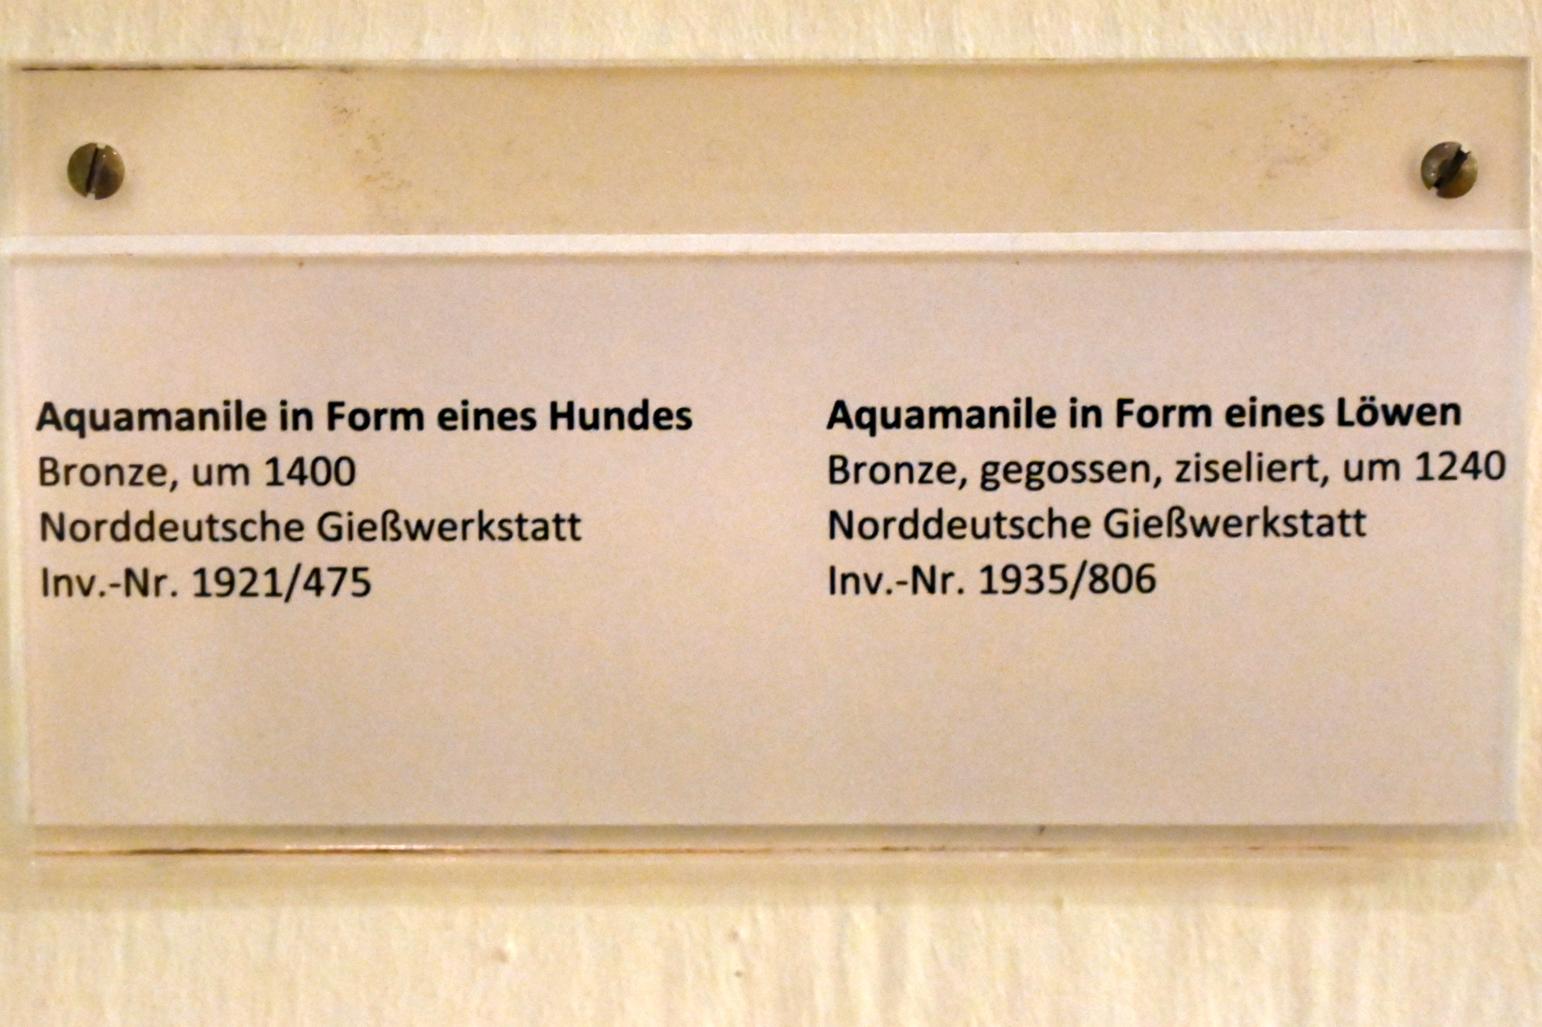 Aquamanile in Form eines Hundes, Schleswig, Landesmuseum für Kunst und Kulturgeschichte, Saal 9, um 1400, Bild 3/3